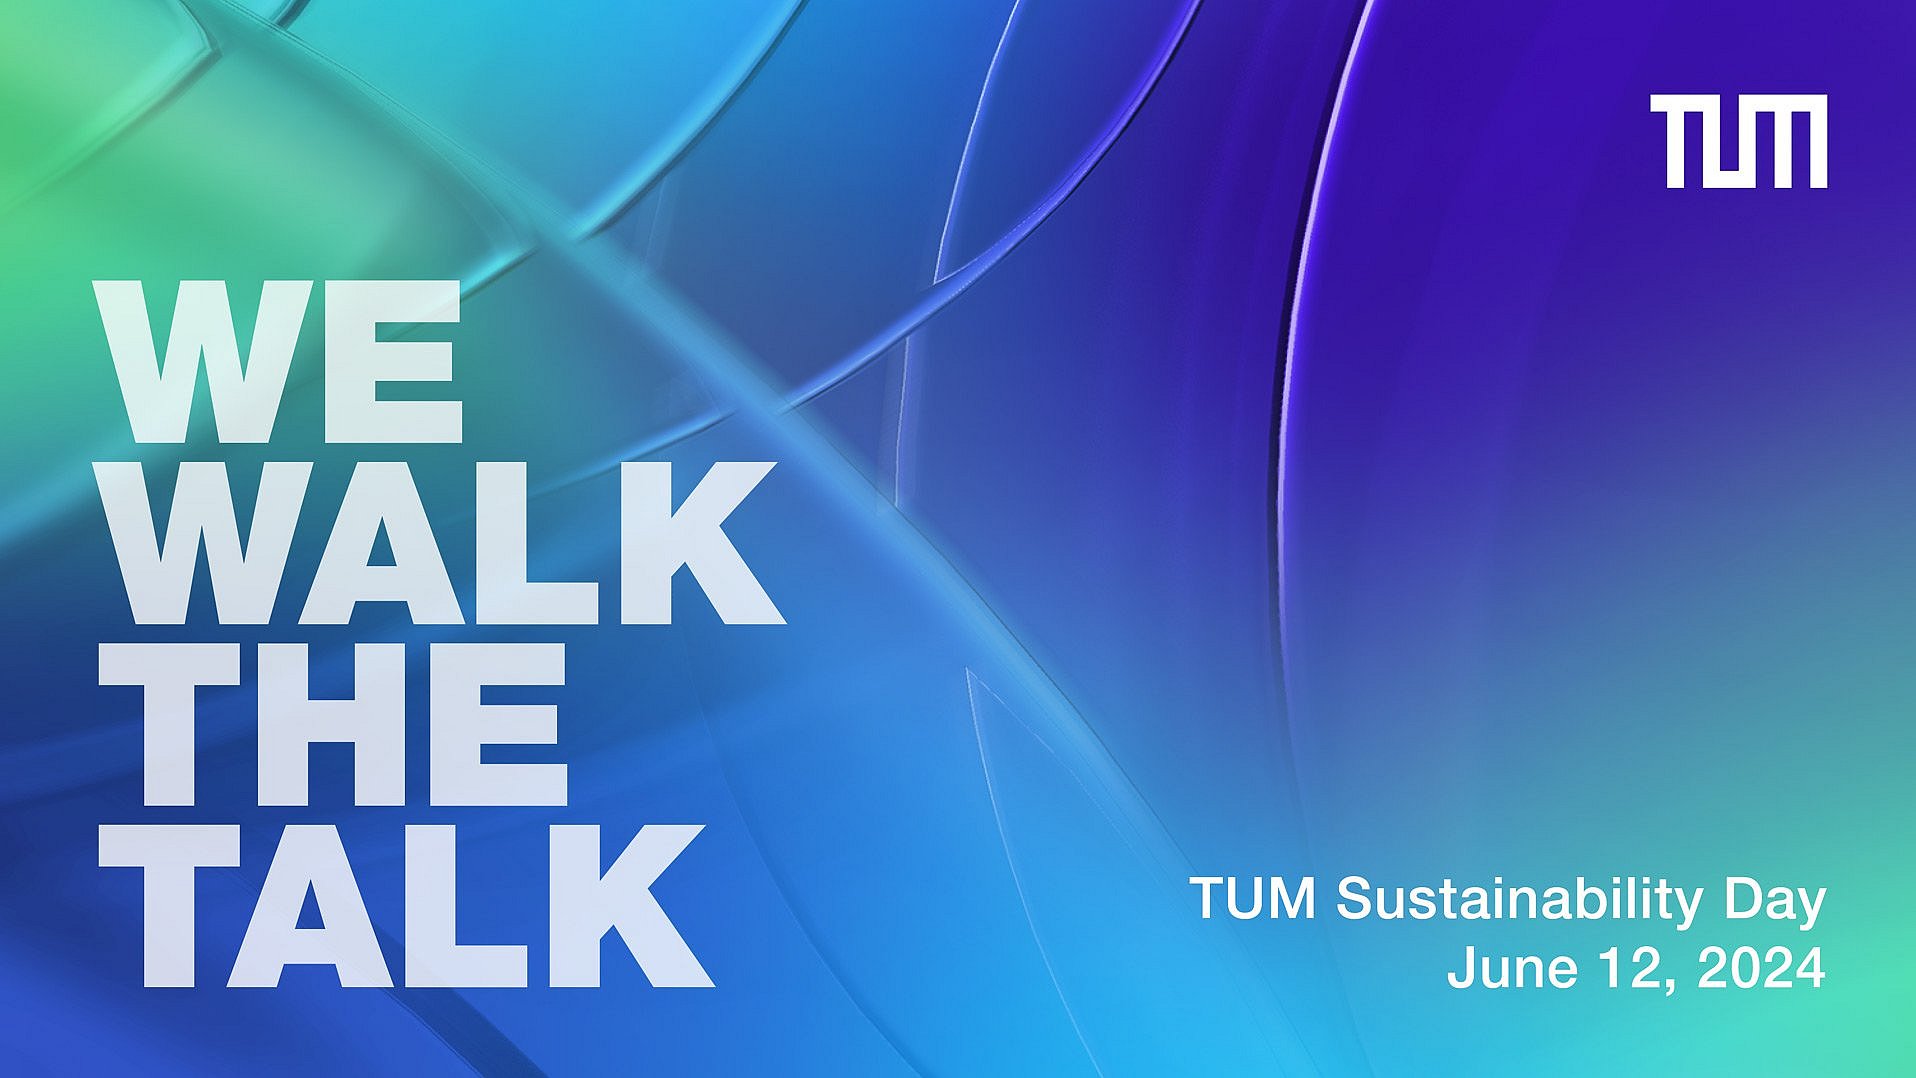 Schriftzug "We walk the talk" und Informationen zum Sustainability Day 2024 auf einem blaugrünen Hintergrund